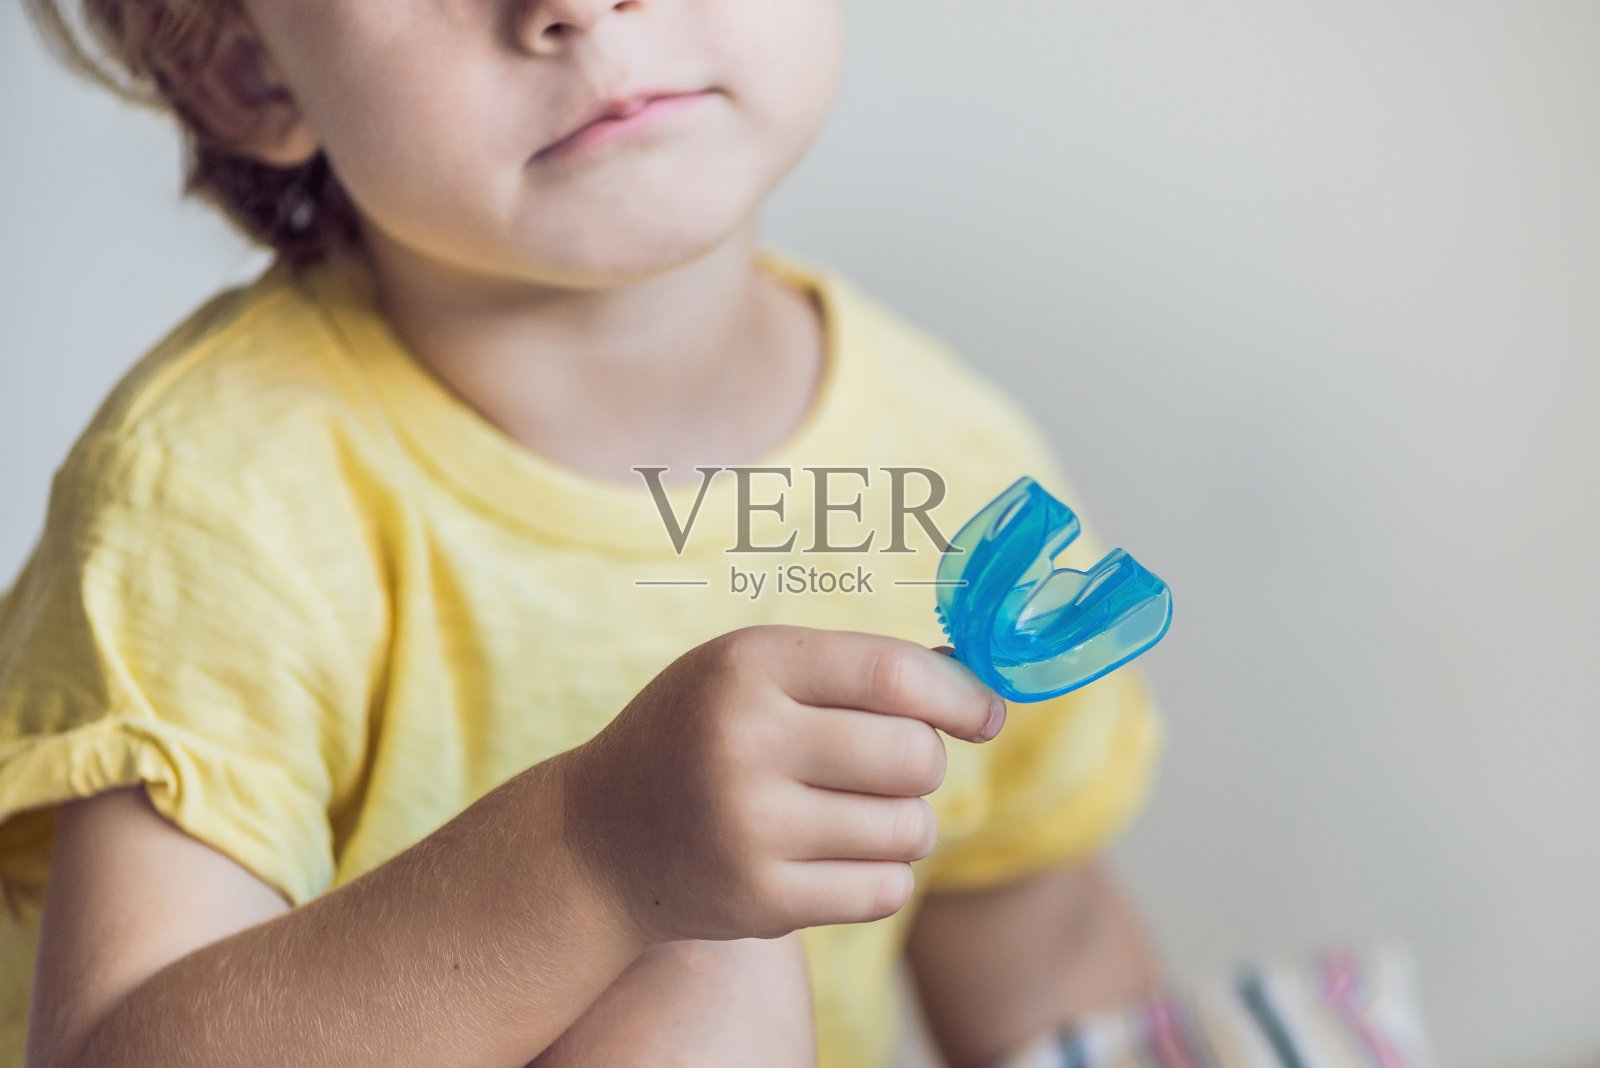 三岁男孩展示肌肉功能训练器。帮助平衡生长的牙齿和正确的咬合，养成口腔呼吸习惯。纠正舌头的位置照片摄影图片